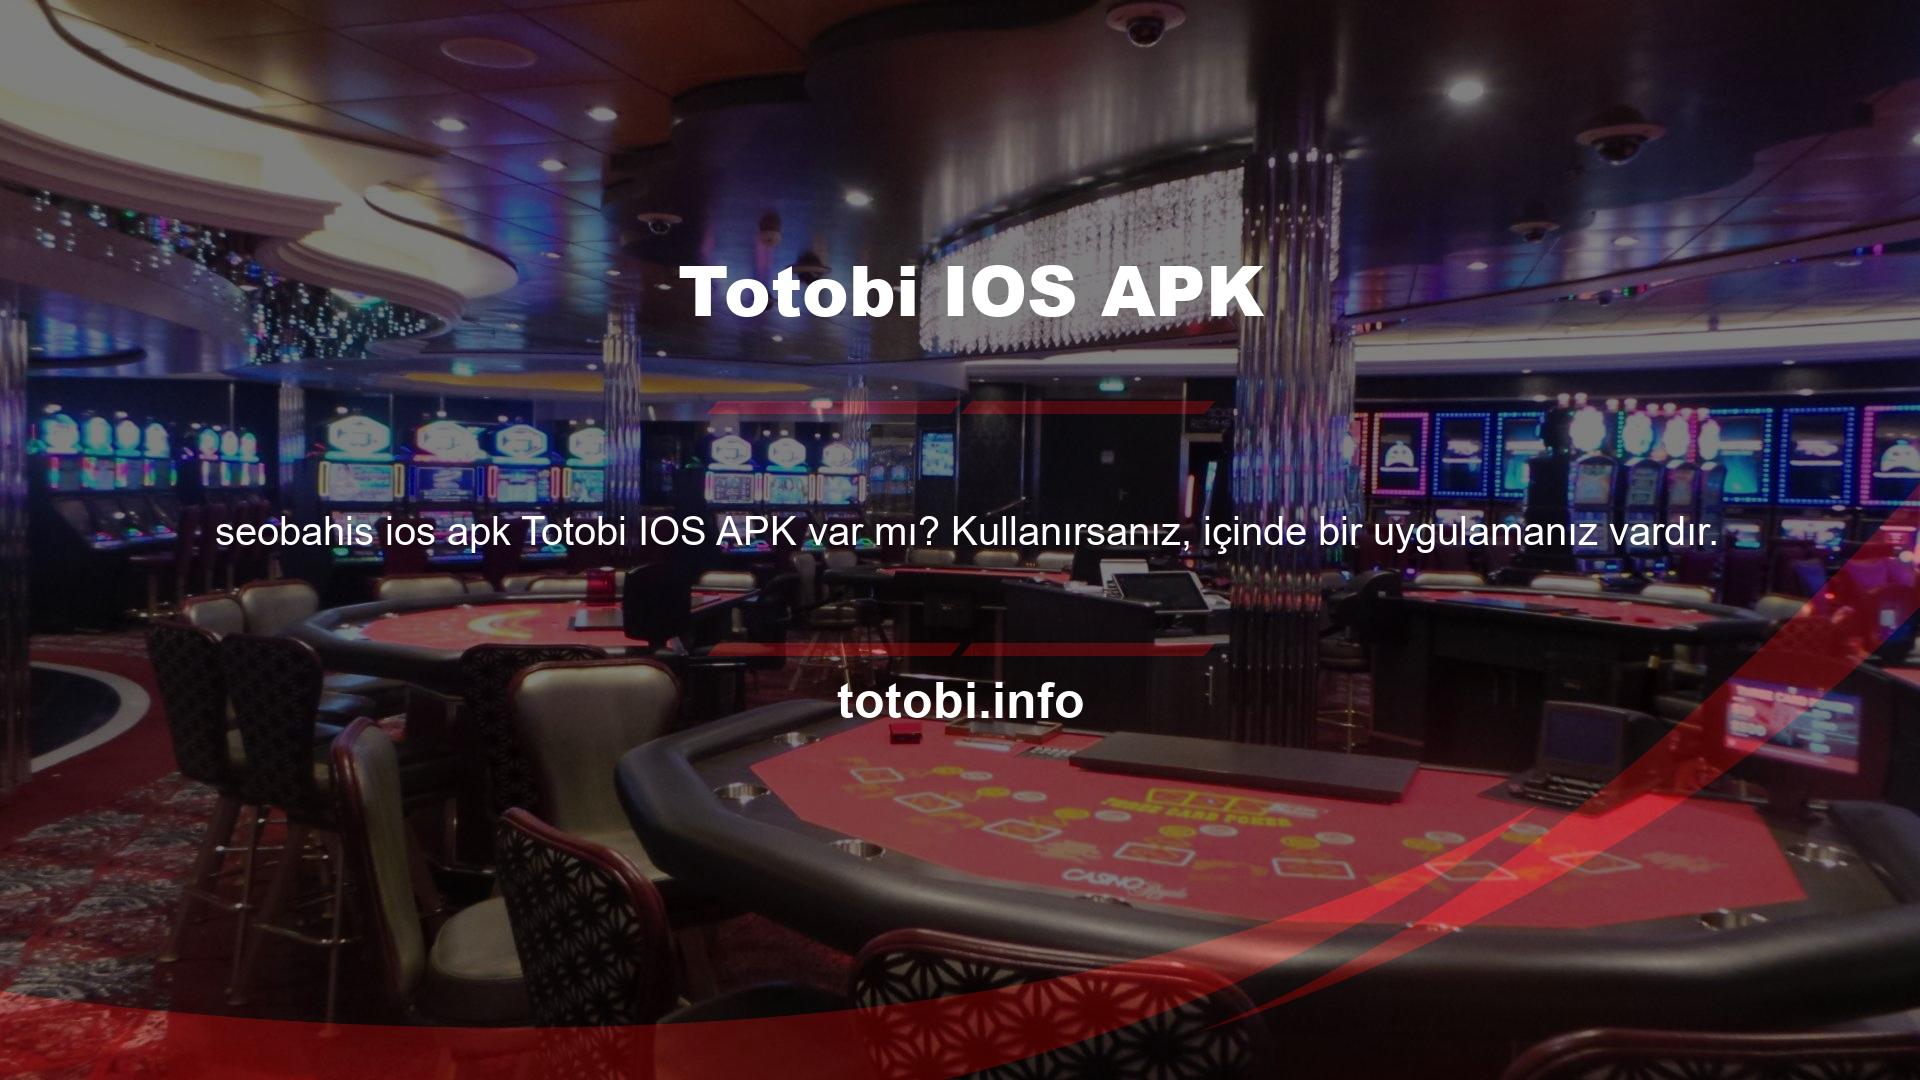 Totobi IOS APK web sitesinde mevcuttur ve ücretsiz bir hediye olarak verilmektedir